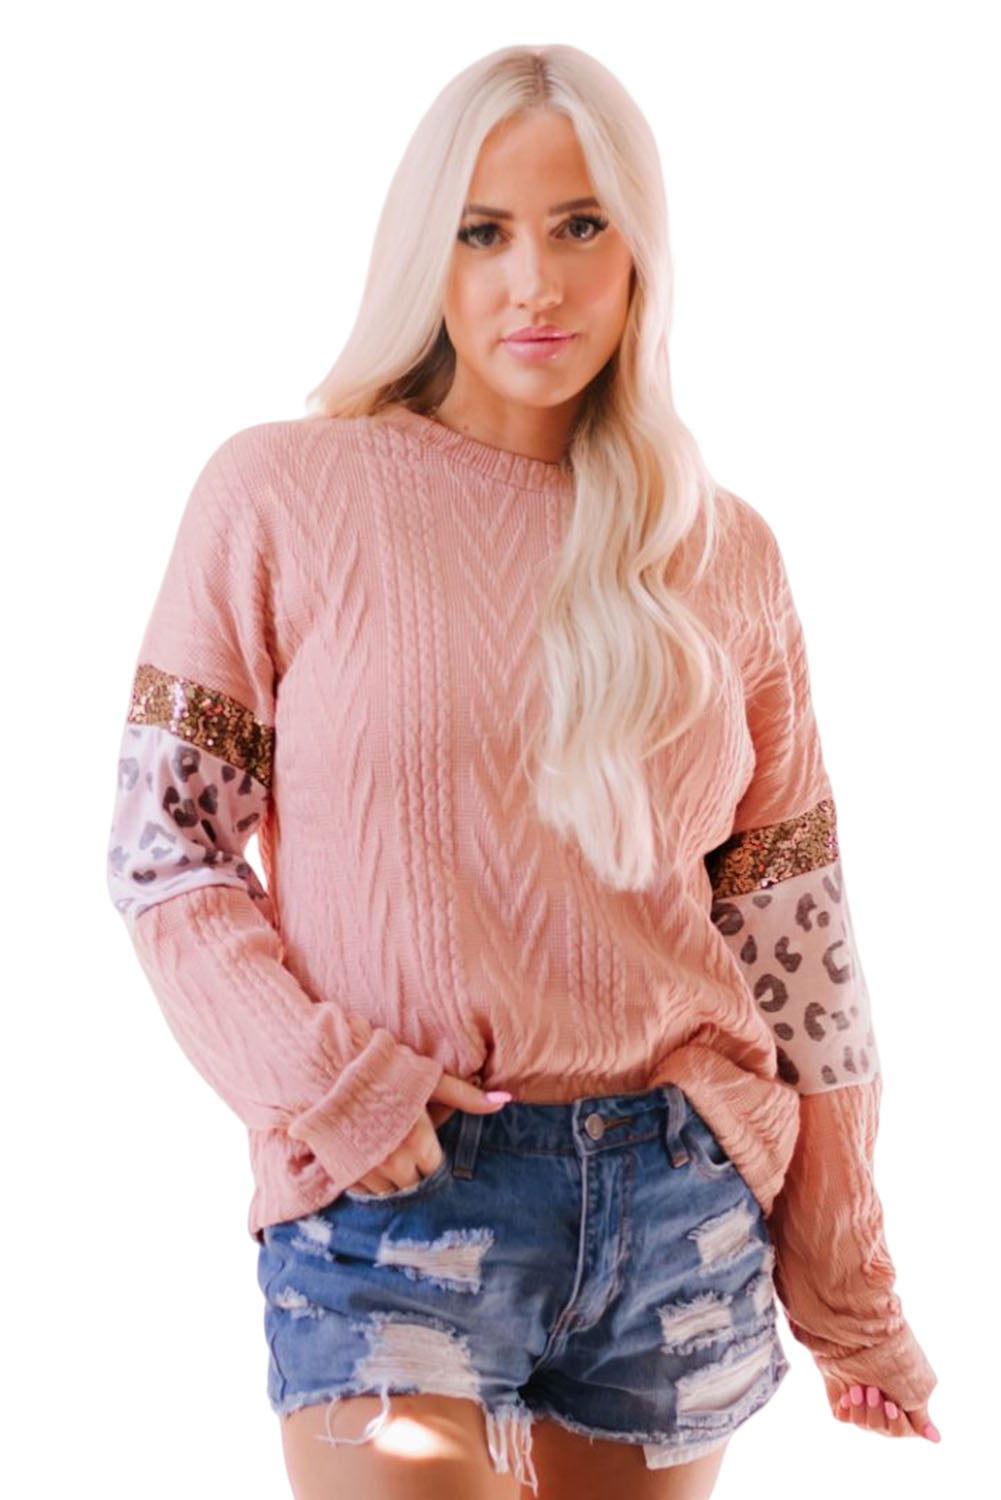 Rožnata pletena majica z leopardjimi rokavi in ​​teksturiranimi bleščicami